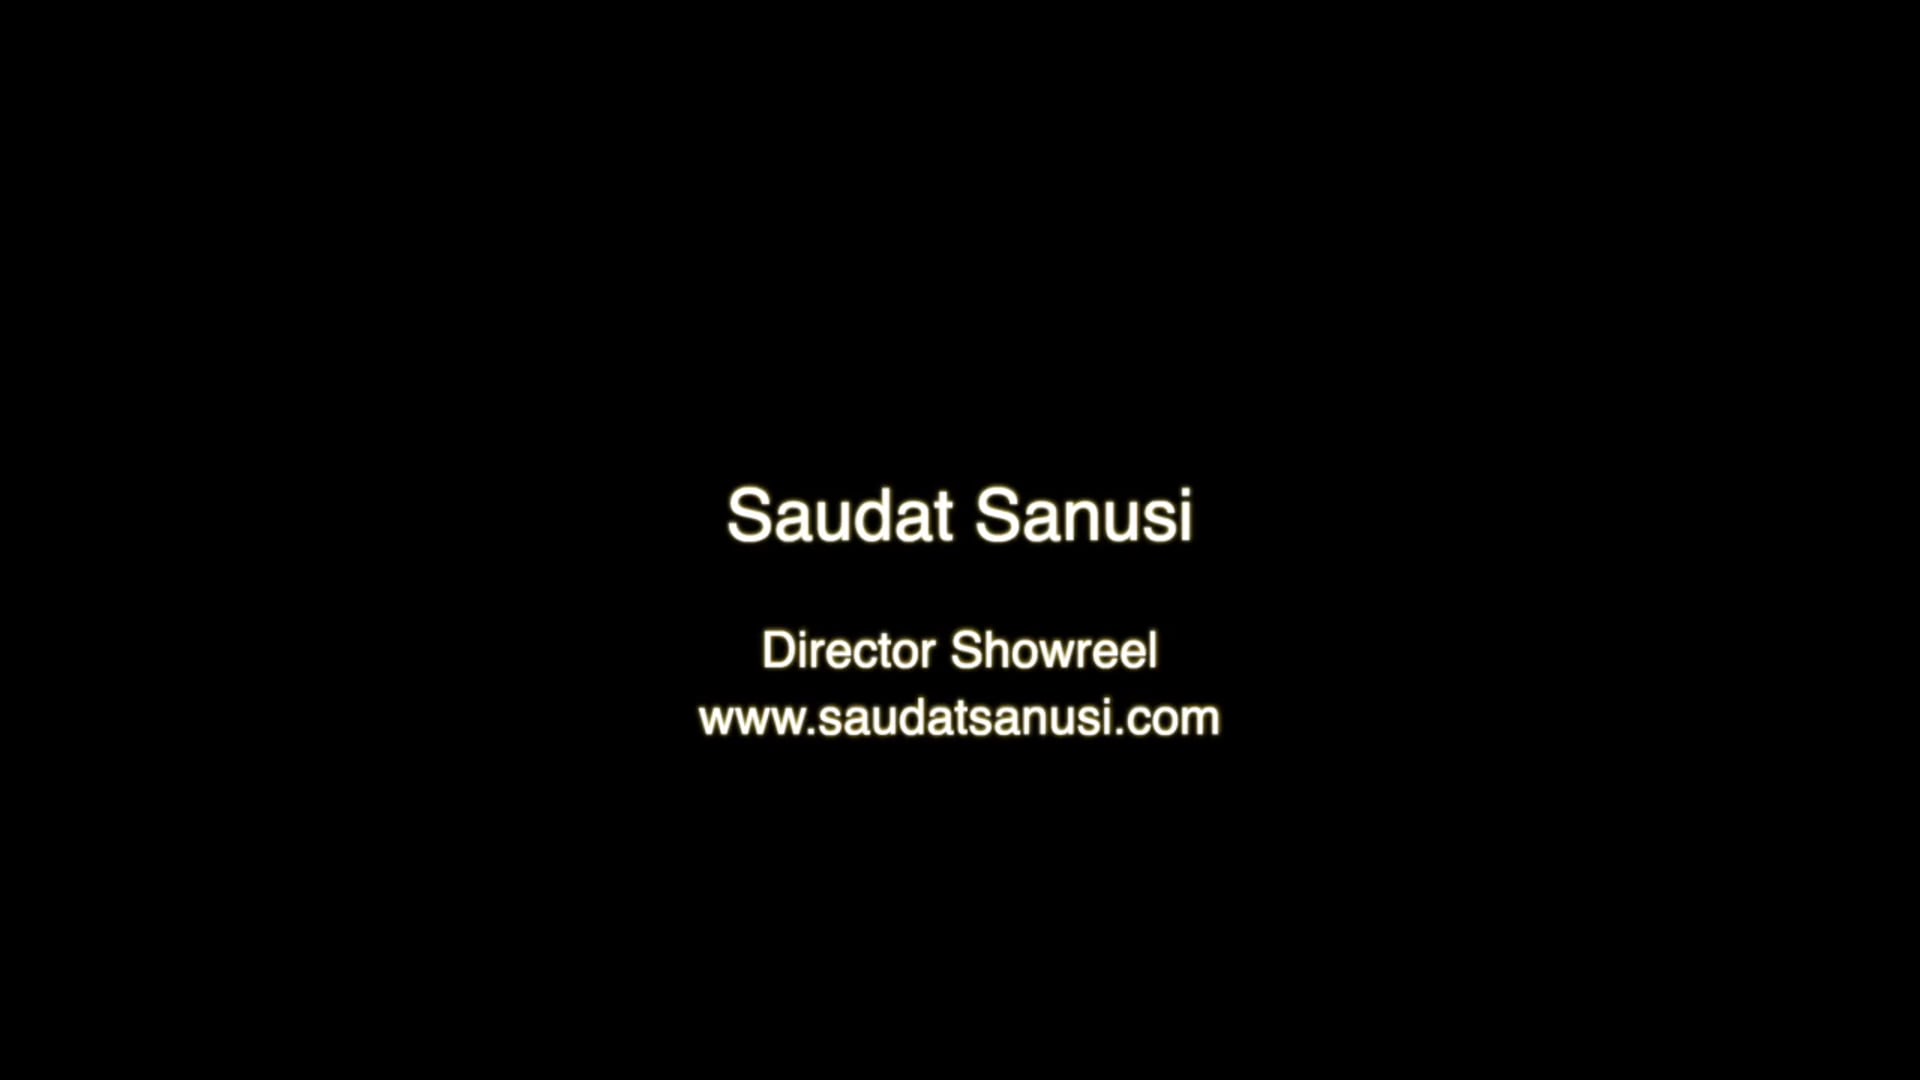 Saudat Sanusi Director Showreel